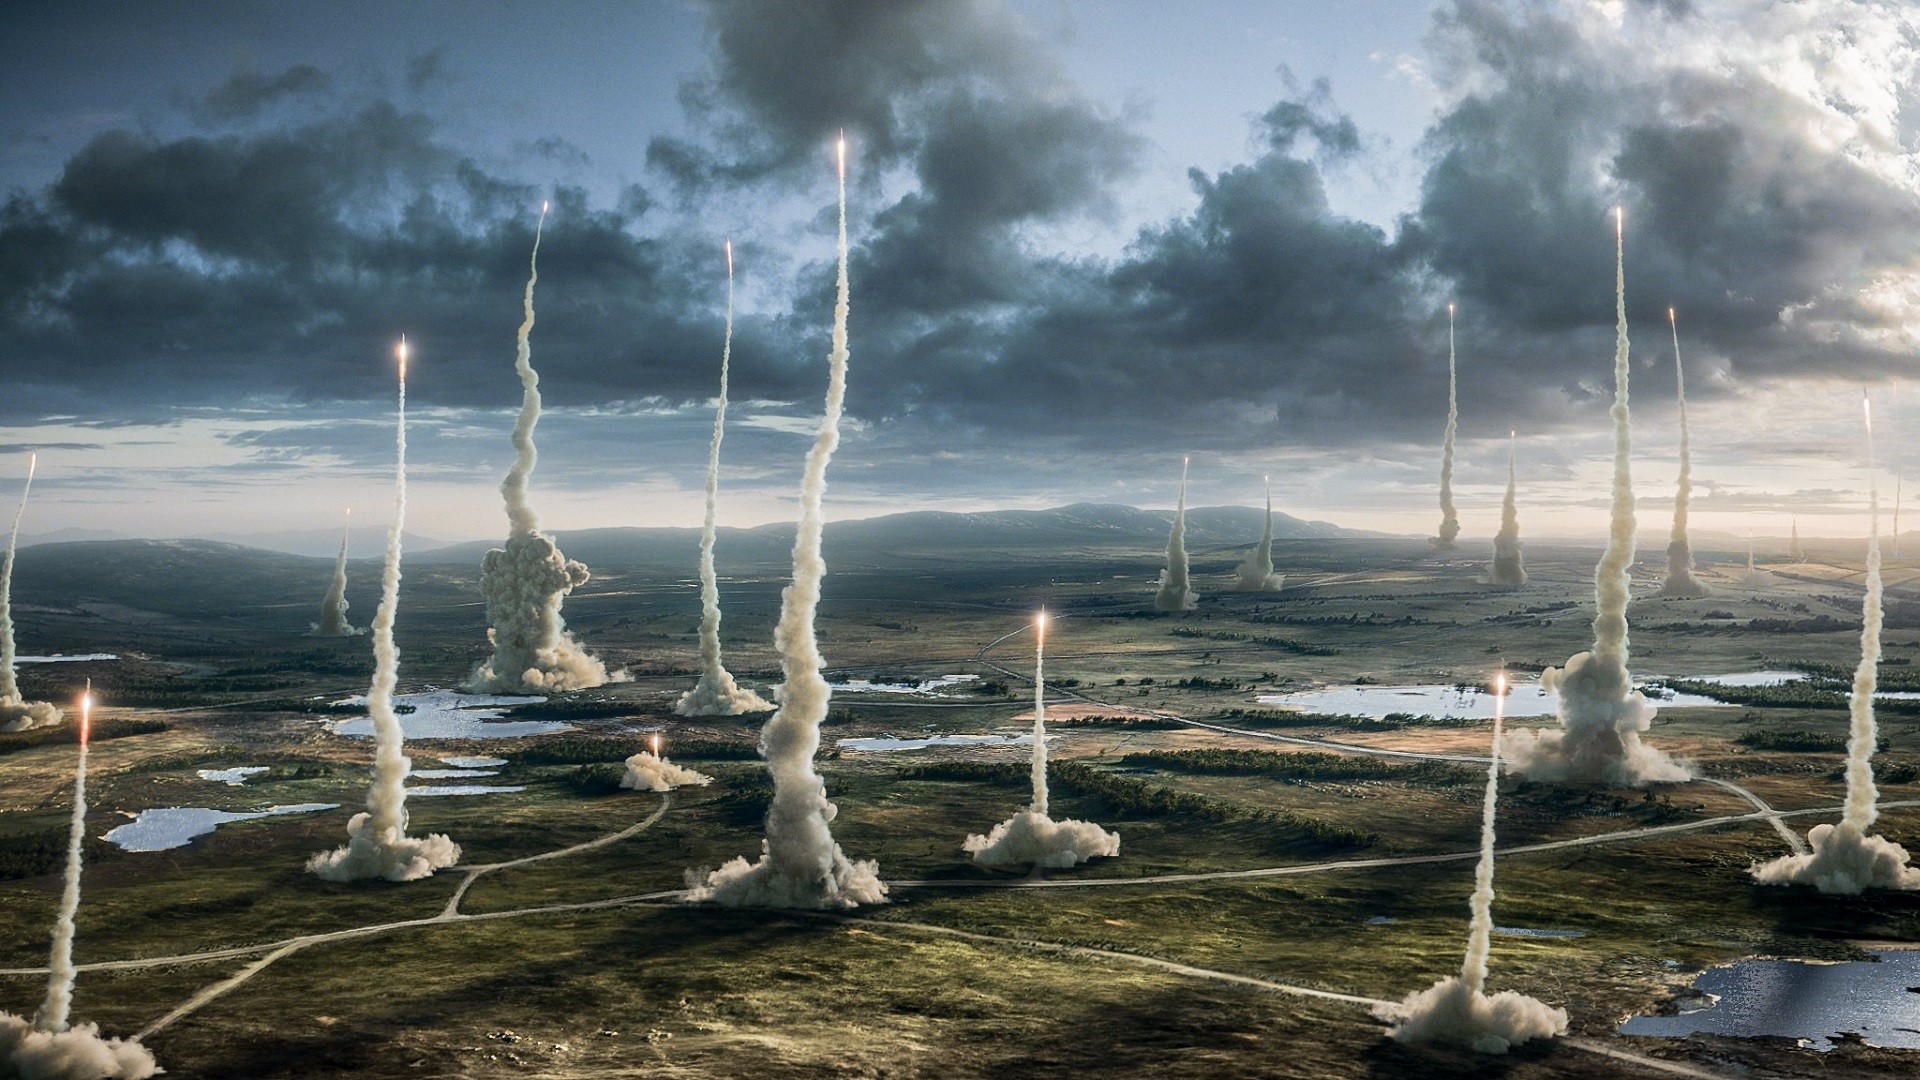 General 1920x1080 x-men: apocalypse landscape rocket movies film stills